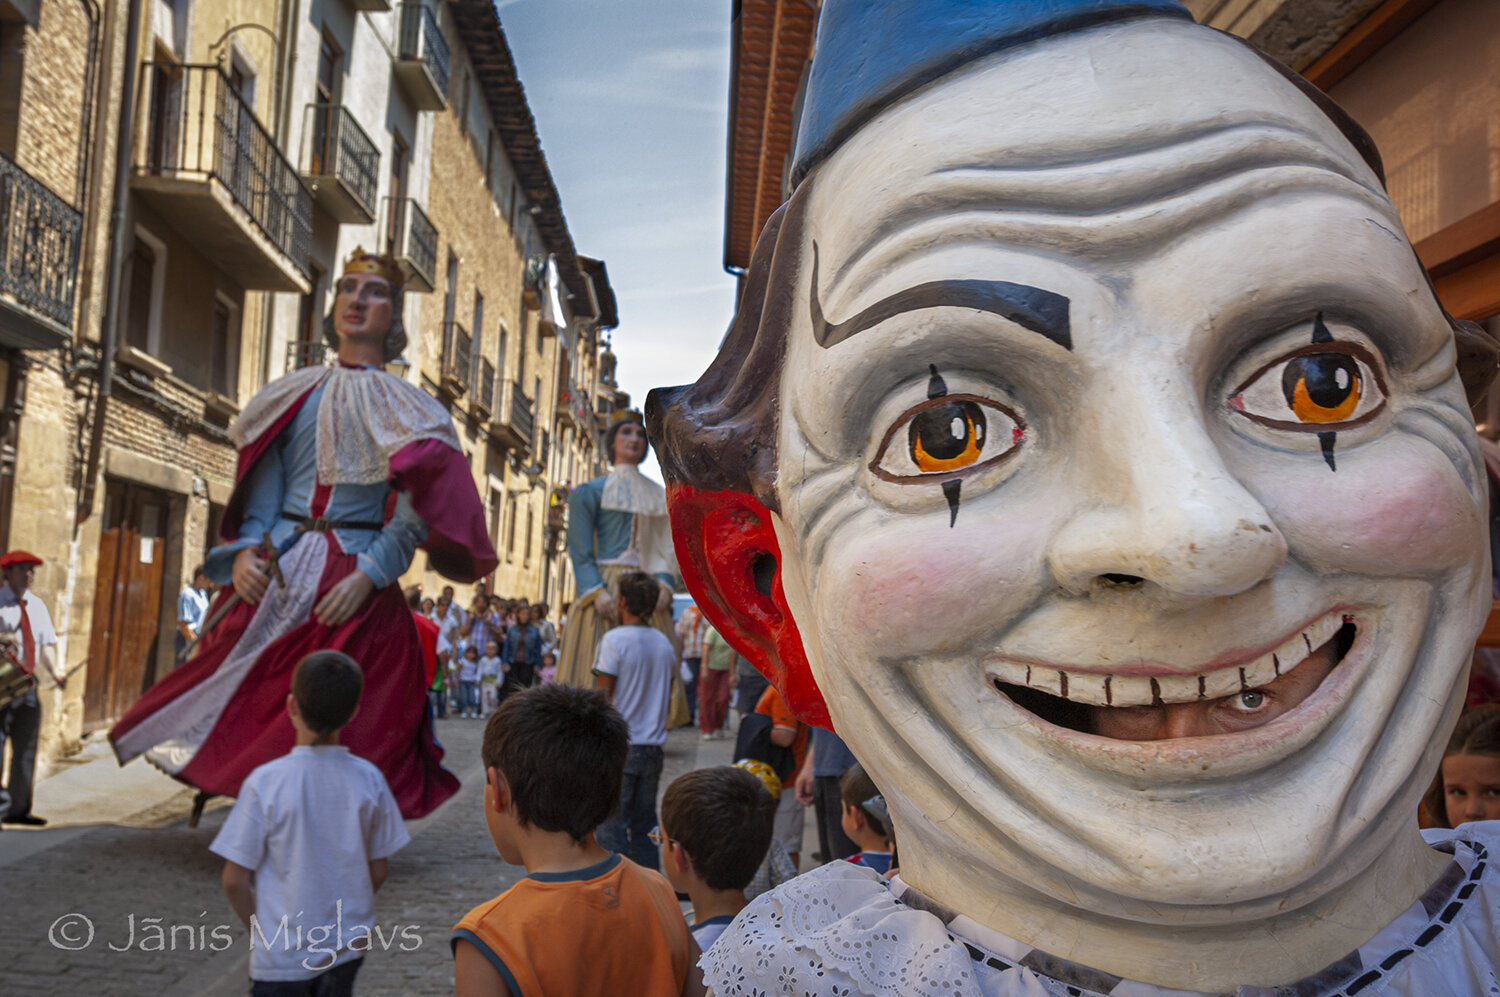 Youth Fiesta in Spain